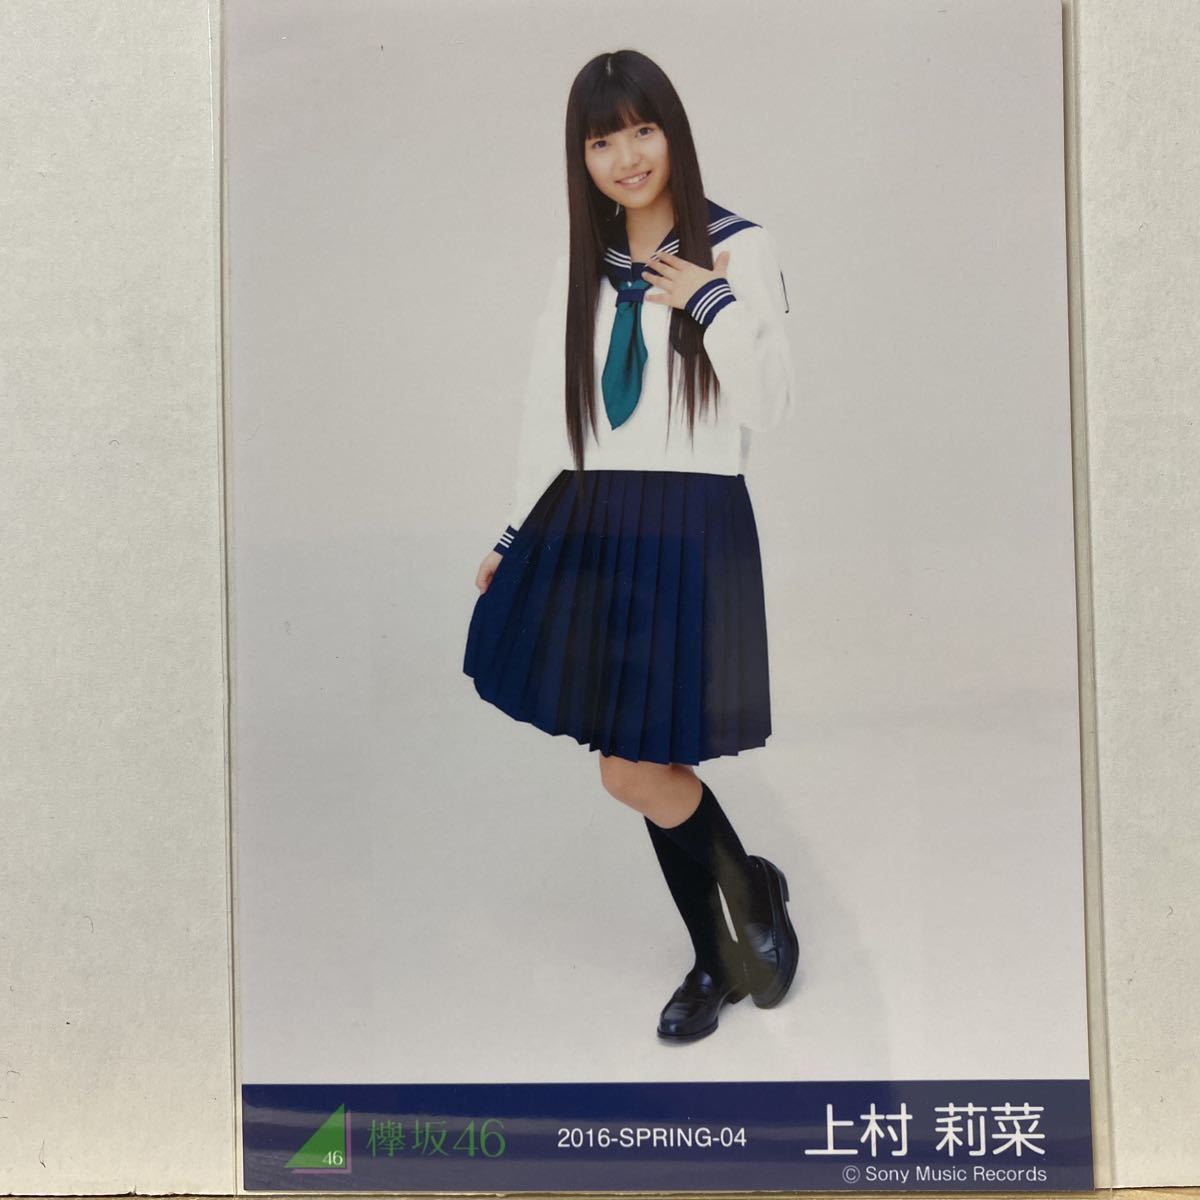 欅坂46 制服のマネキン衣装 生写真 上村莉菜 ヒキ_画像1